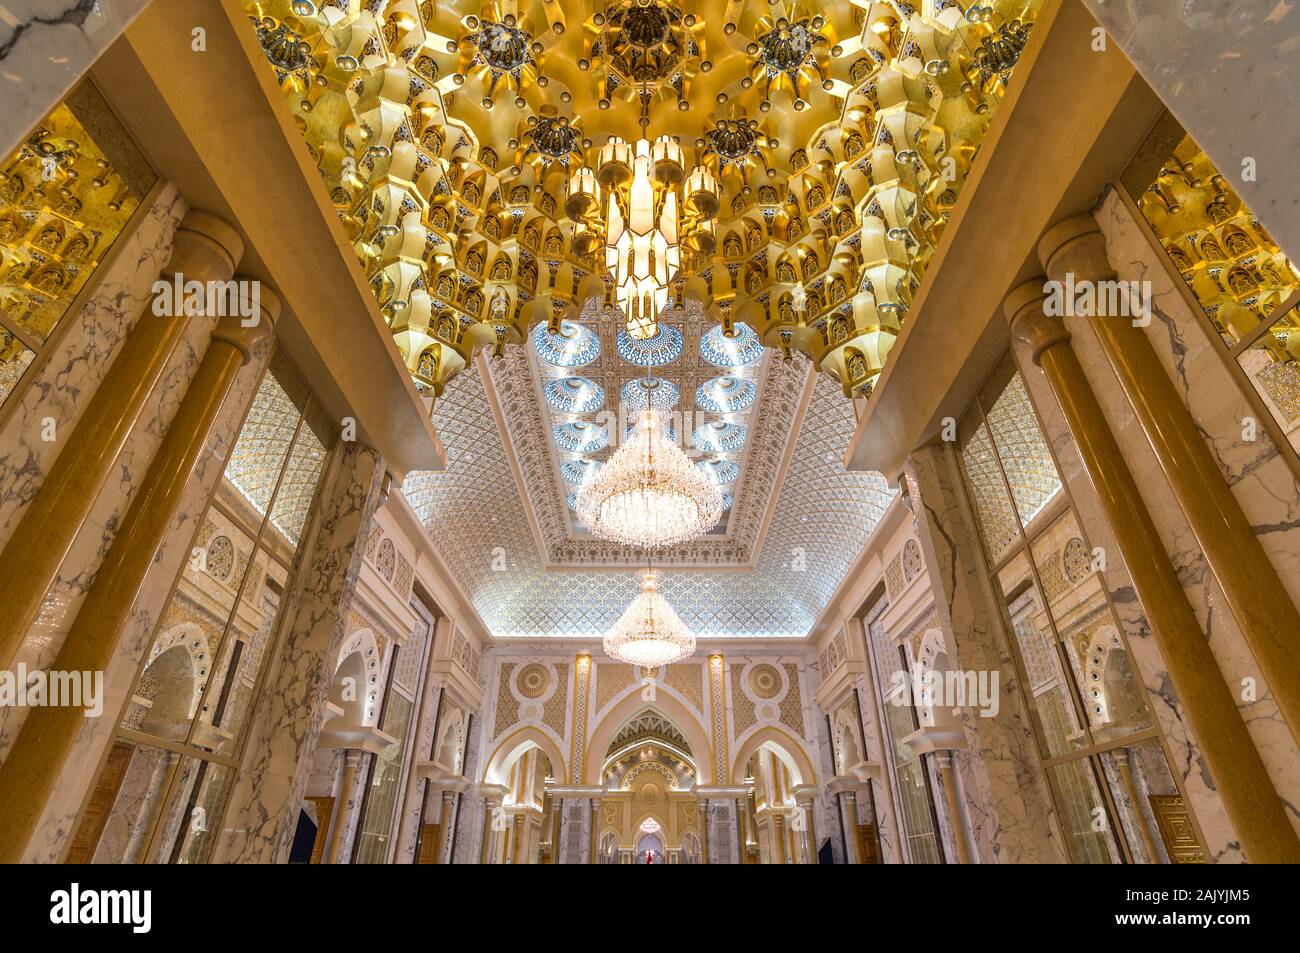 Abu Dhabi, Emiratos Árabes Unidos: la suntuosa decoración de interior del Palacio Presidencial (Qasr Al Watan), el Palacio de la Nación, interiores Foto de stock